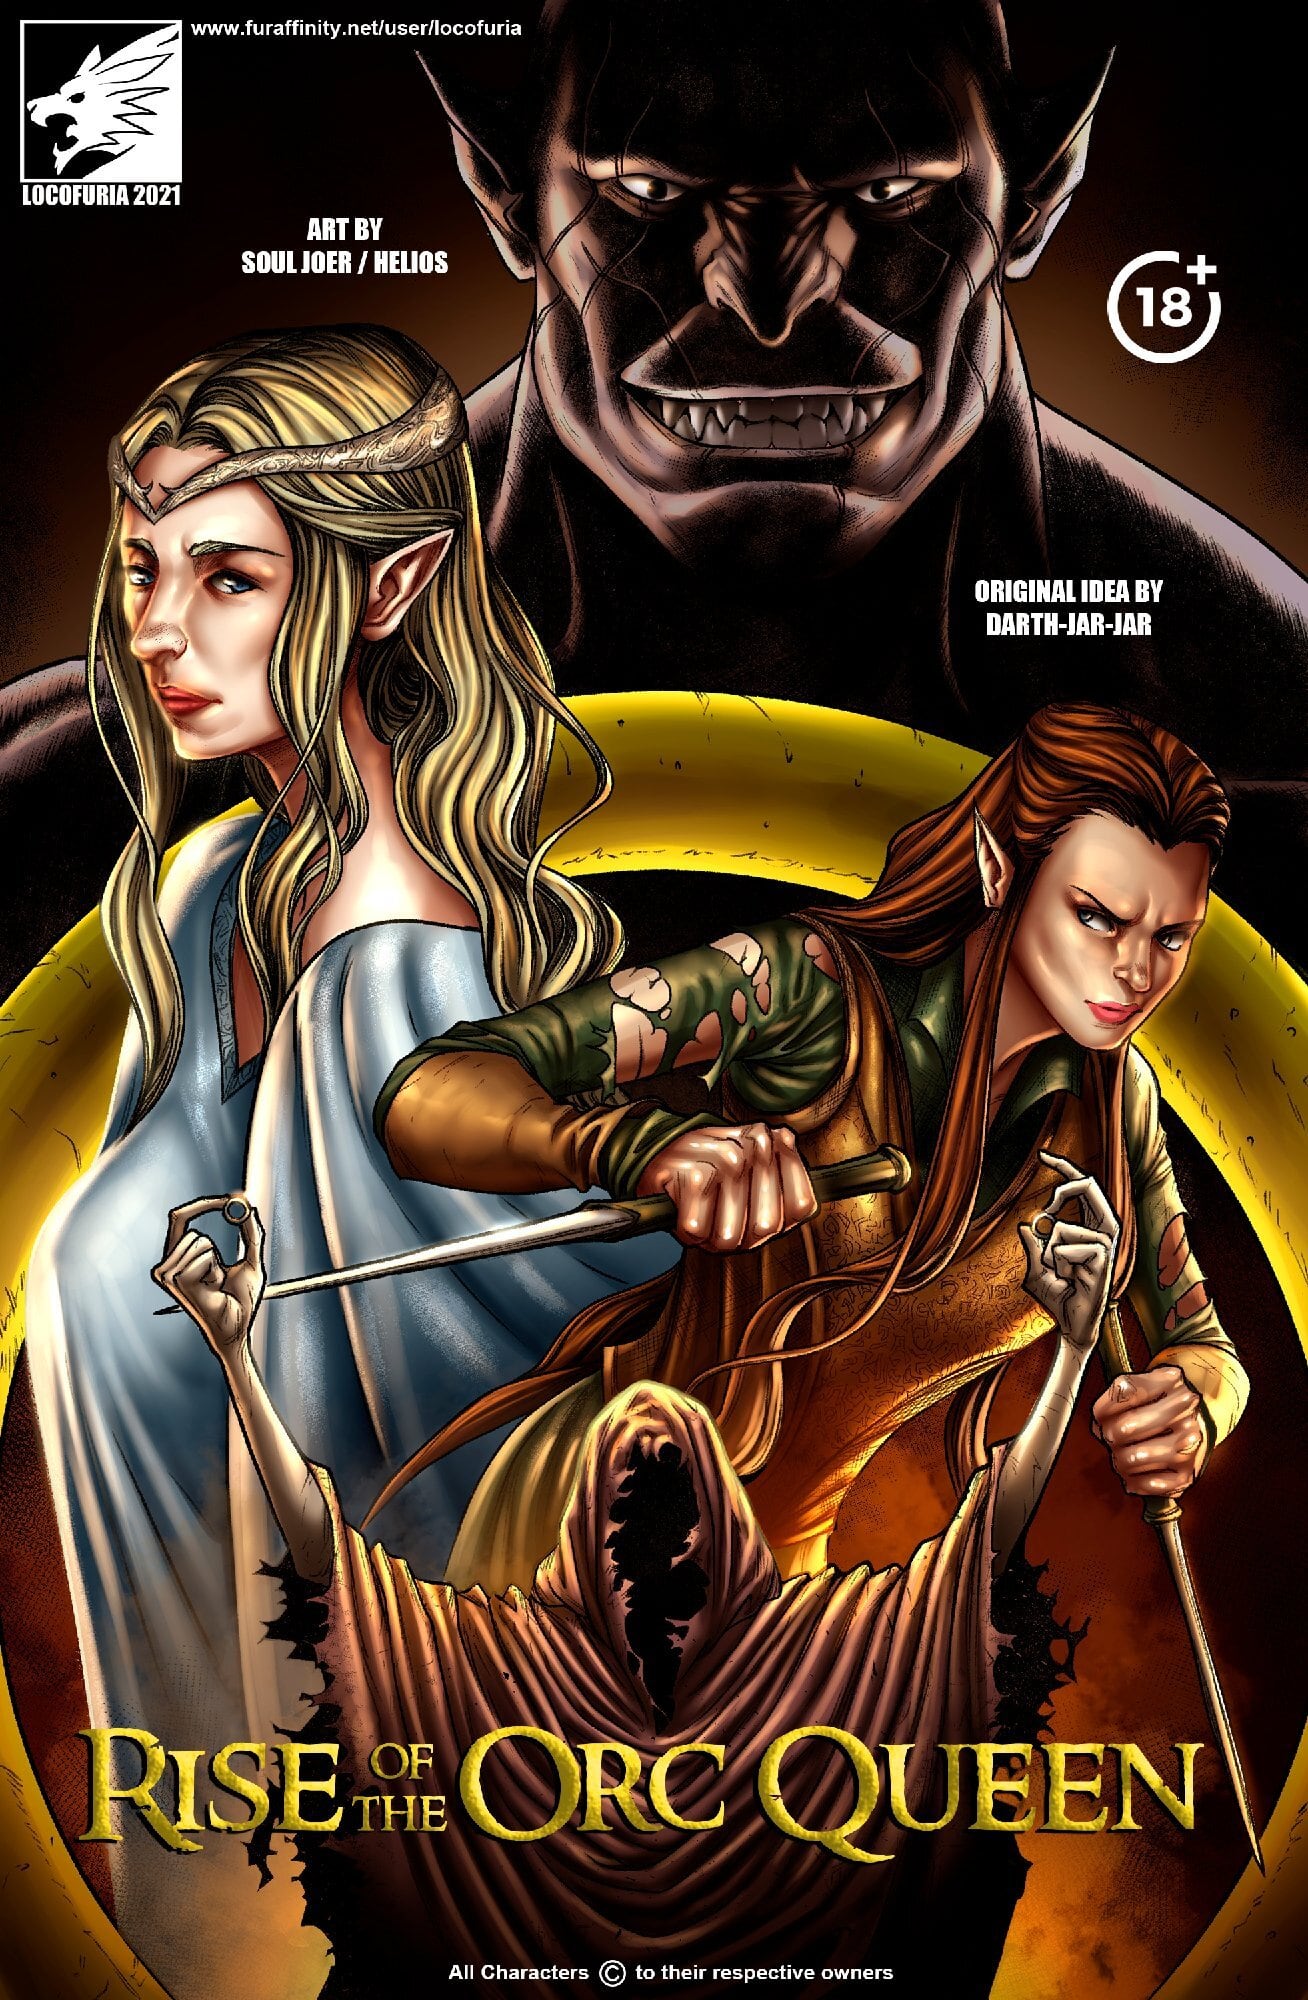 Hobbit Orc Porn - Rise of the Orc Queen â€“ Locofuria - Porn Cartoon Comics